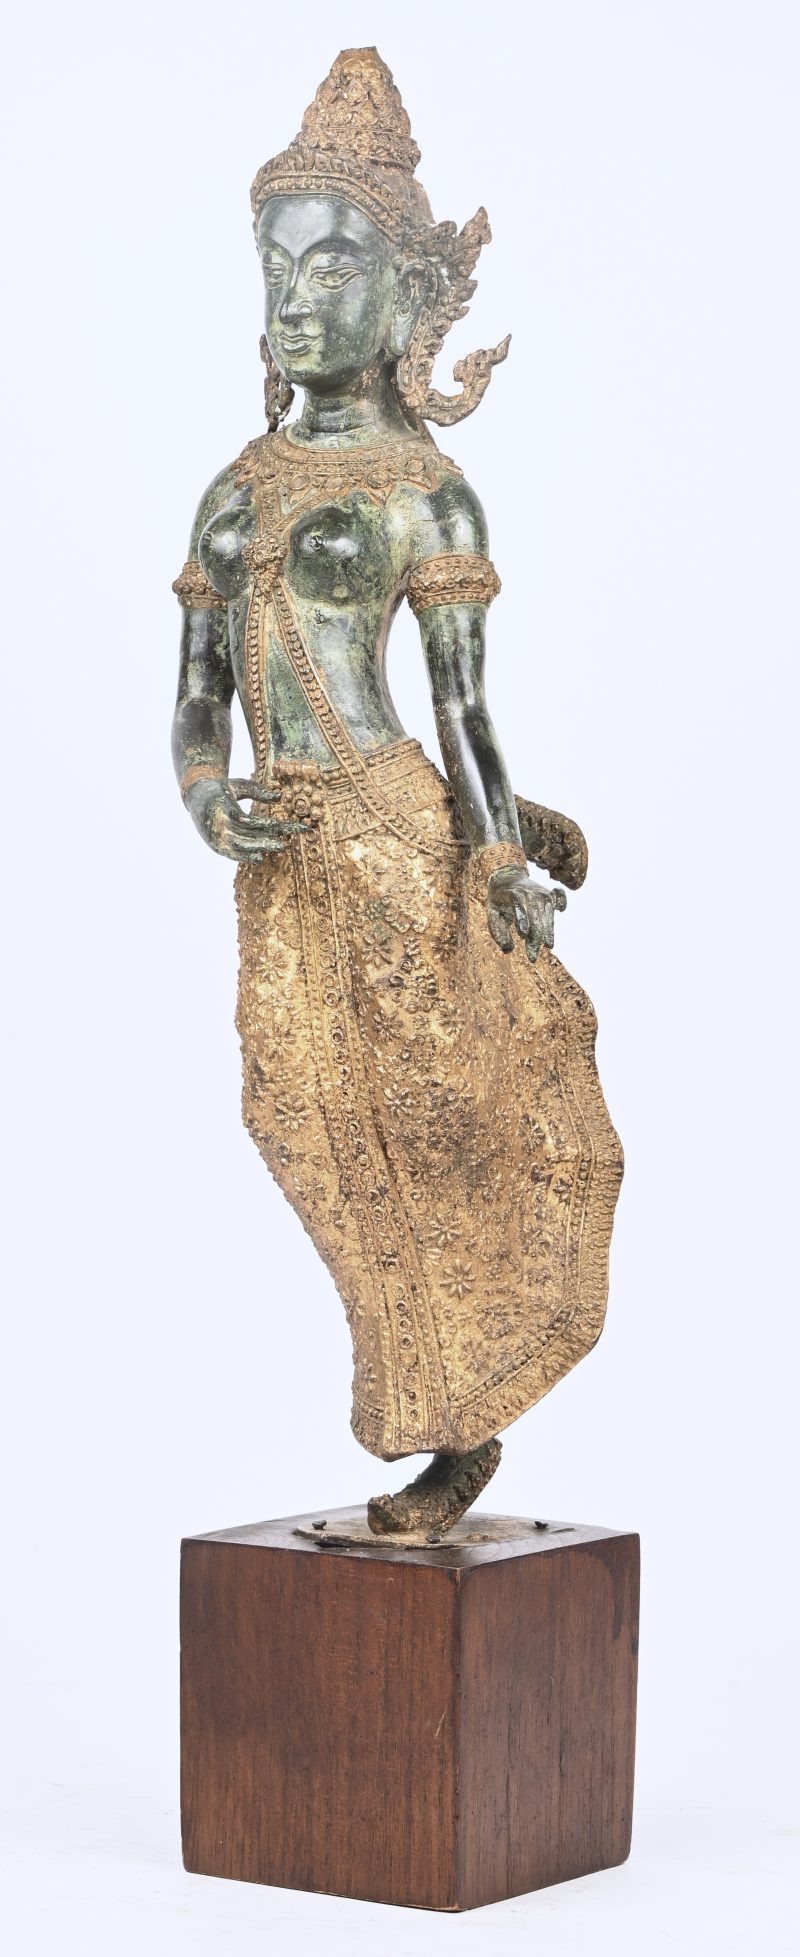 “Oriëntaalse danseres”. Een brons gesculpteerd beeld op houten sokkel. Puntje hoofddeksel afgebroken.